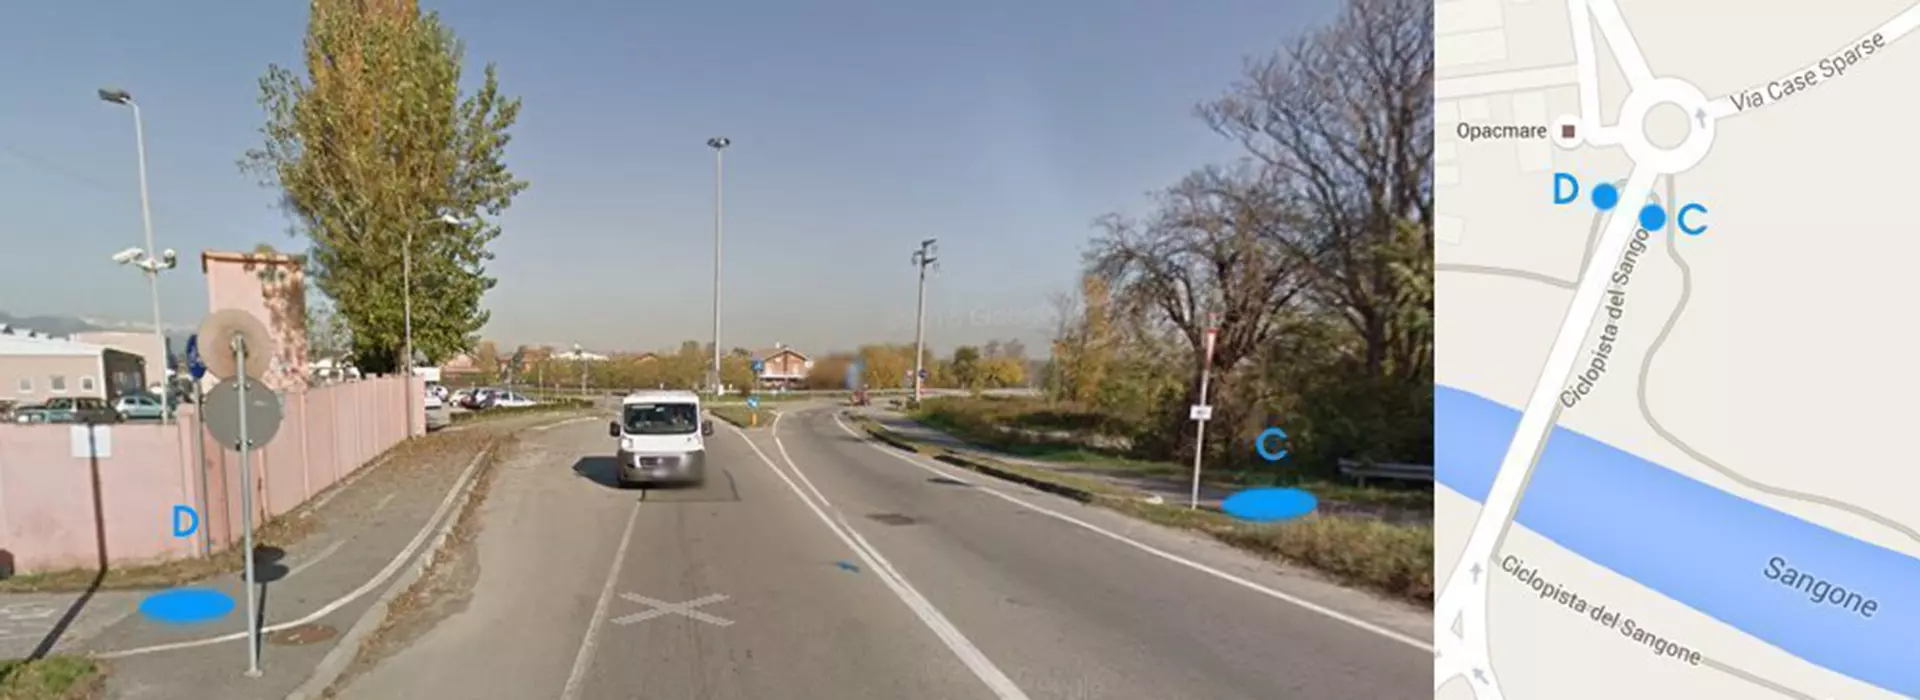 Screenshot di Google maps del Tratto Rivalta ( strada circonvallazione di Rivalta) – Rivalta (via Piossasco) con evidenziati i punti D e C della via fluviale del Sangone Fiume 